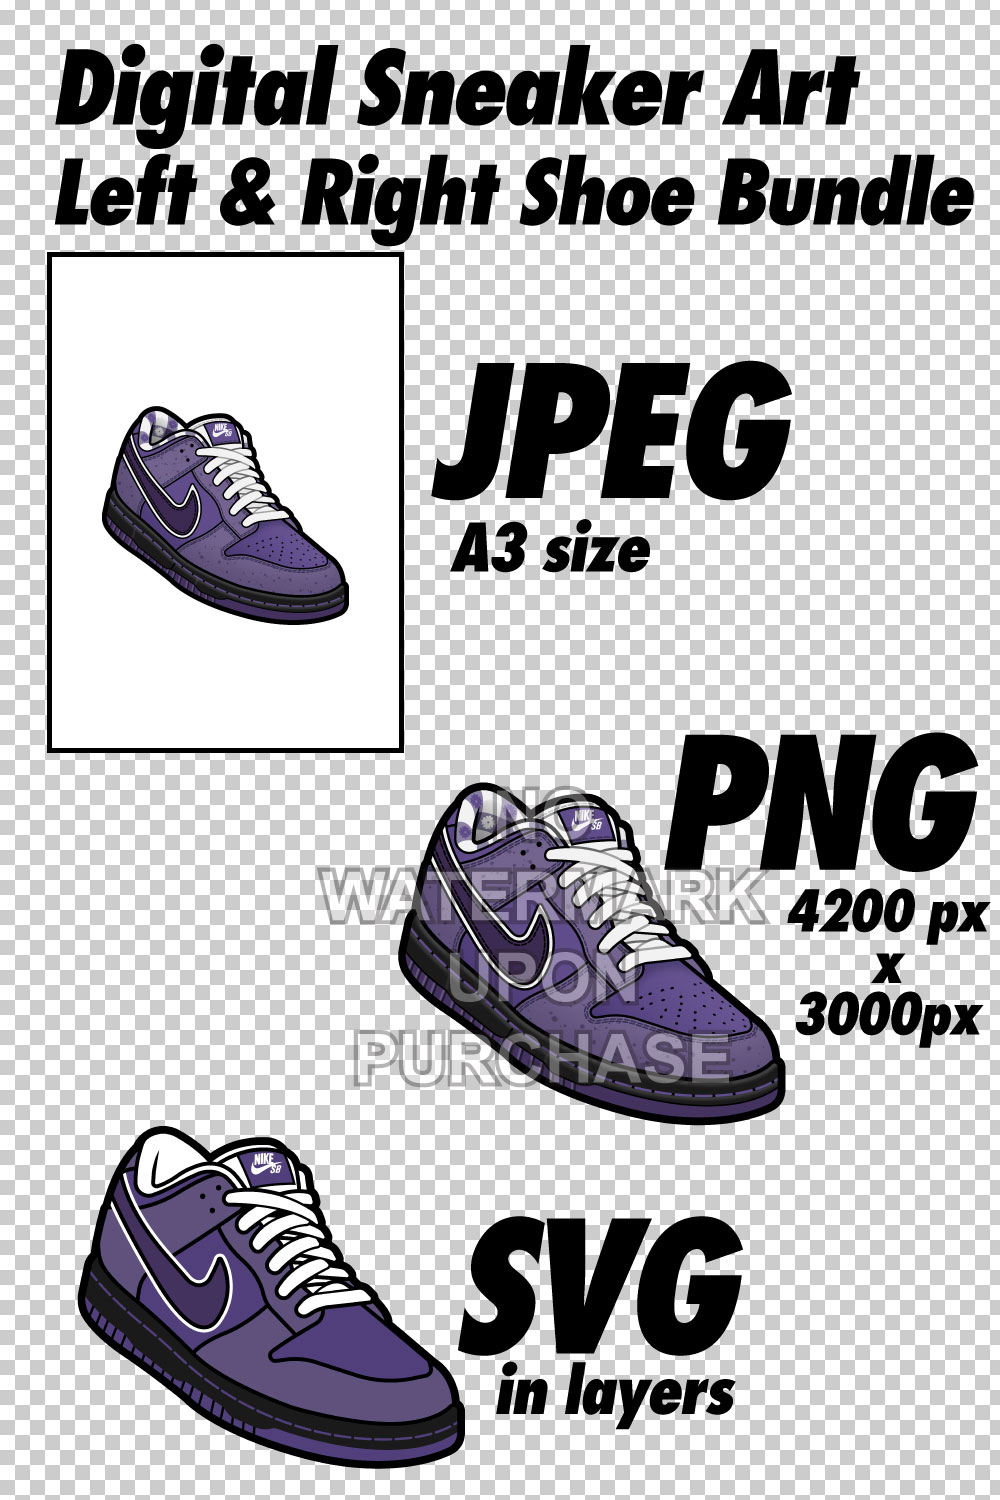 Dunk Low Purple Lobster JPEG PNG SVG Left & Right Shoe Bundle digital download pinterest preview image.